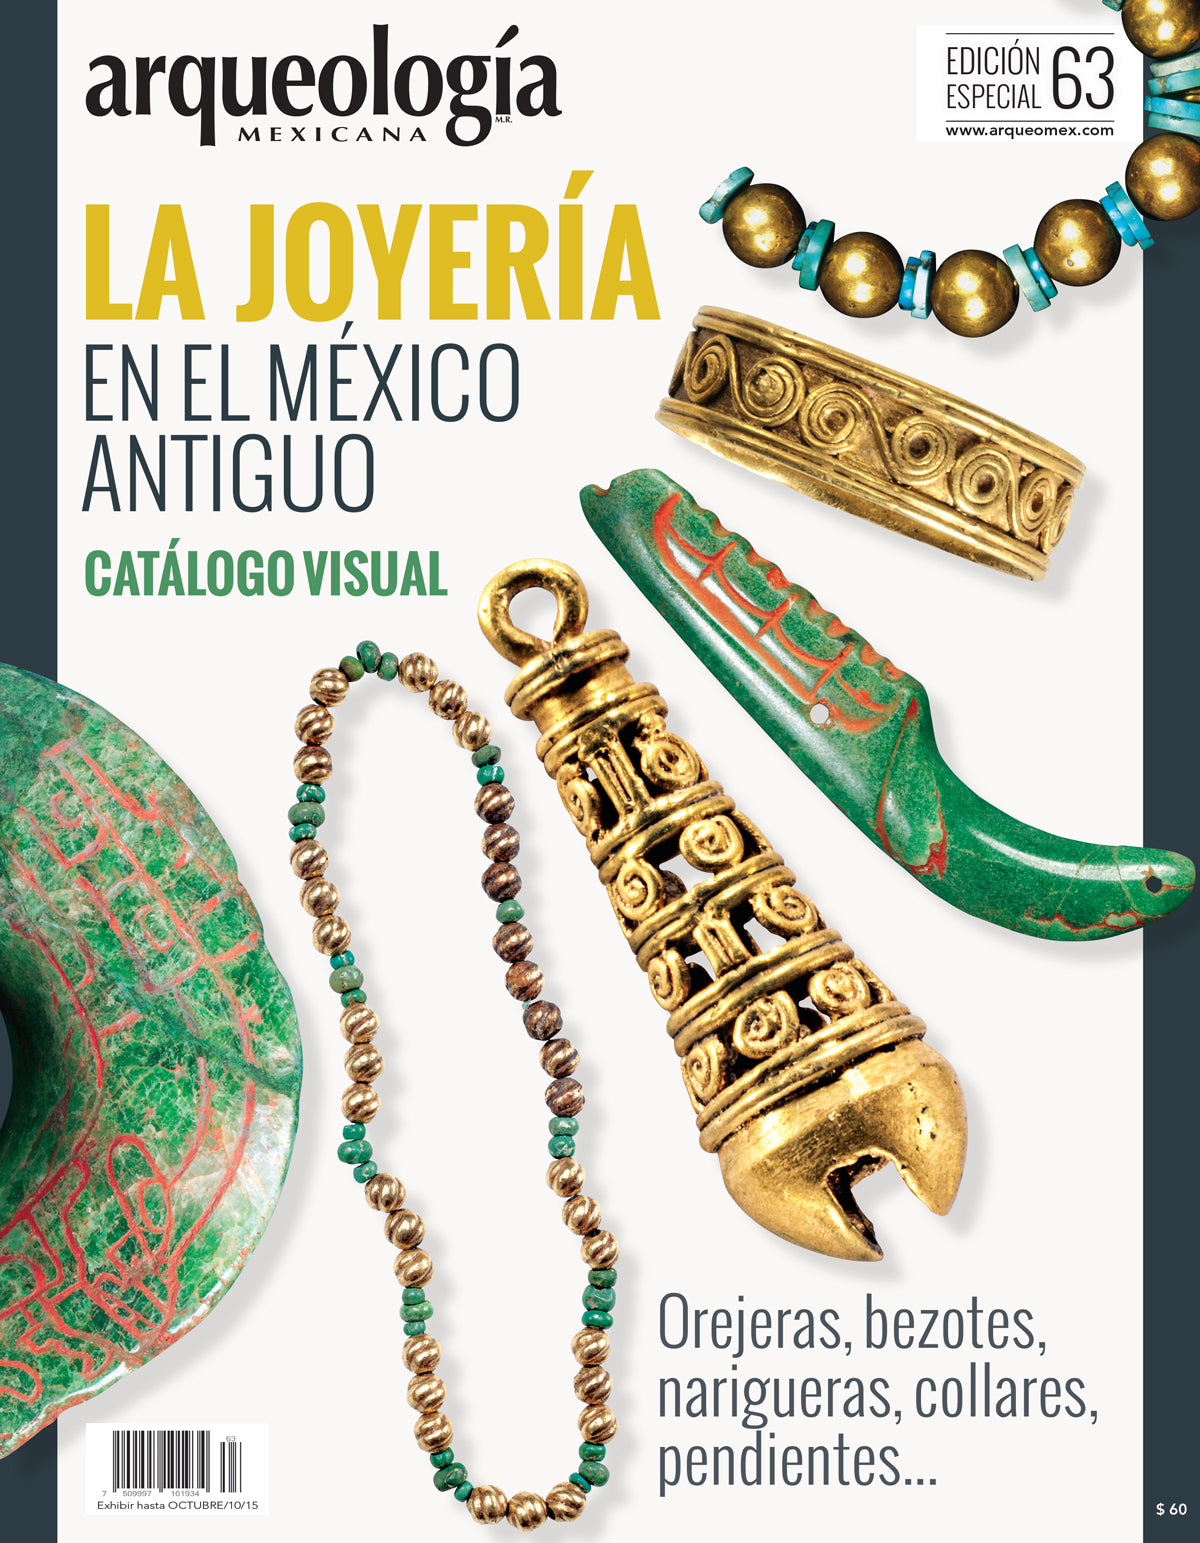 La joyería en el México antiguo. Catálogo visual